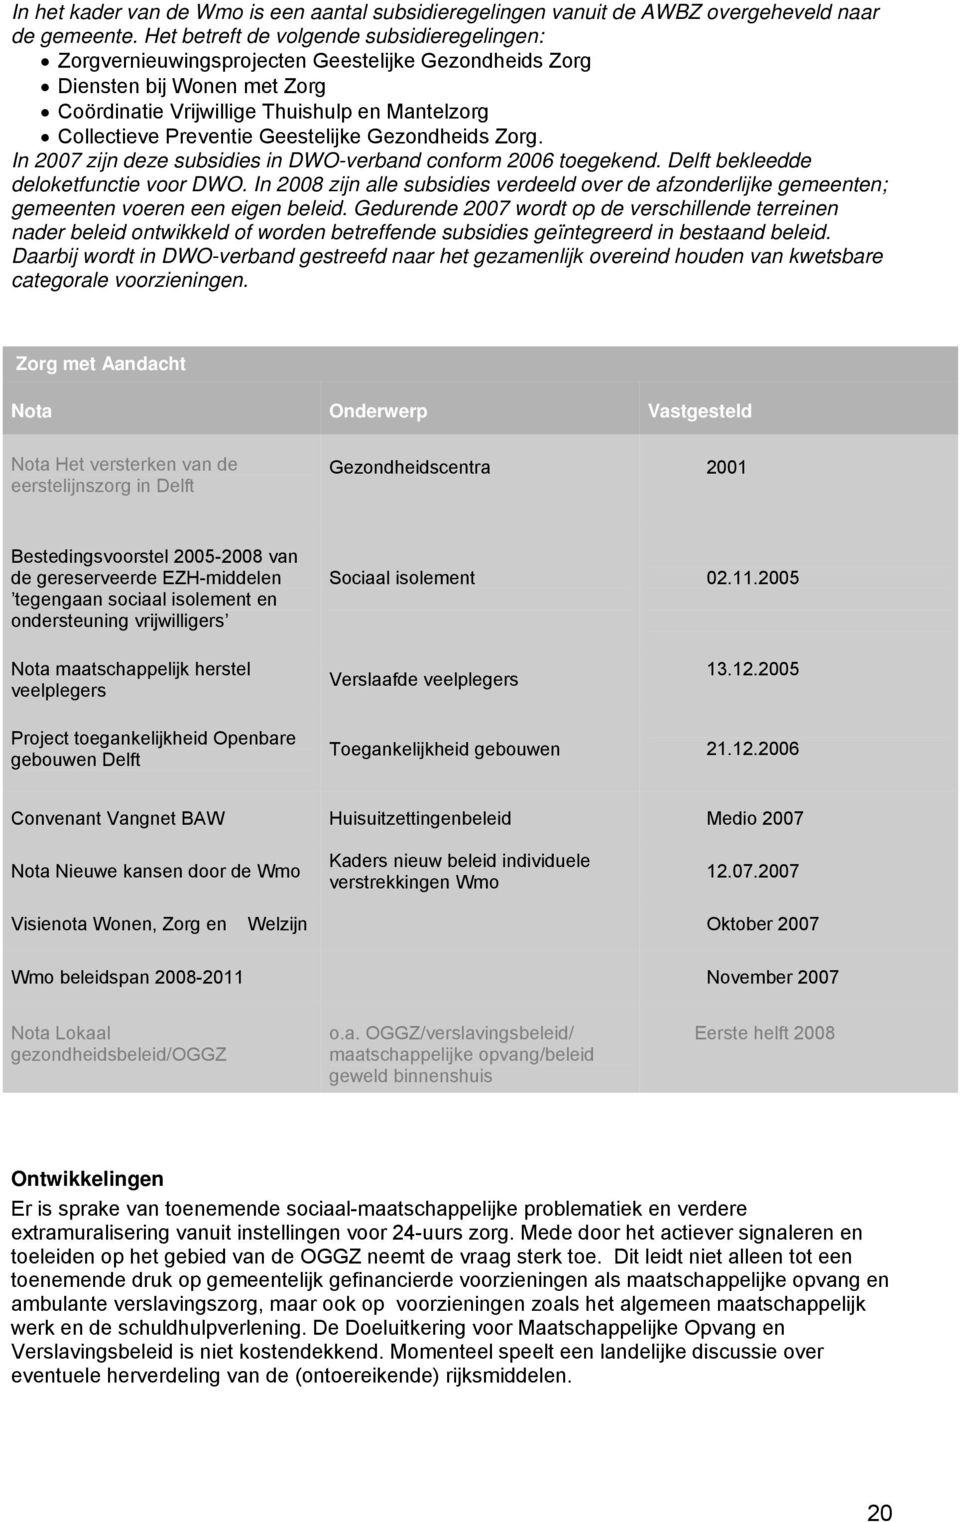 Geestelijke Gezondheids Zorg. In 2007 zijn deze subsidies in DWO-verband conform 2006 toegekend. Delft bekleedde deloketfunctie voor DWO.